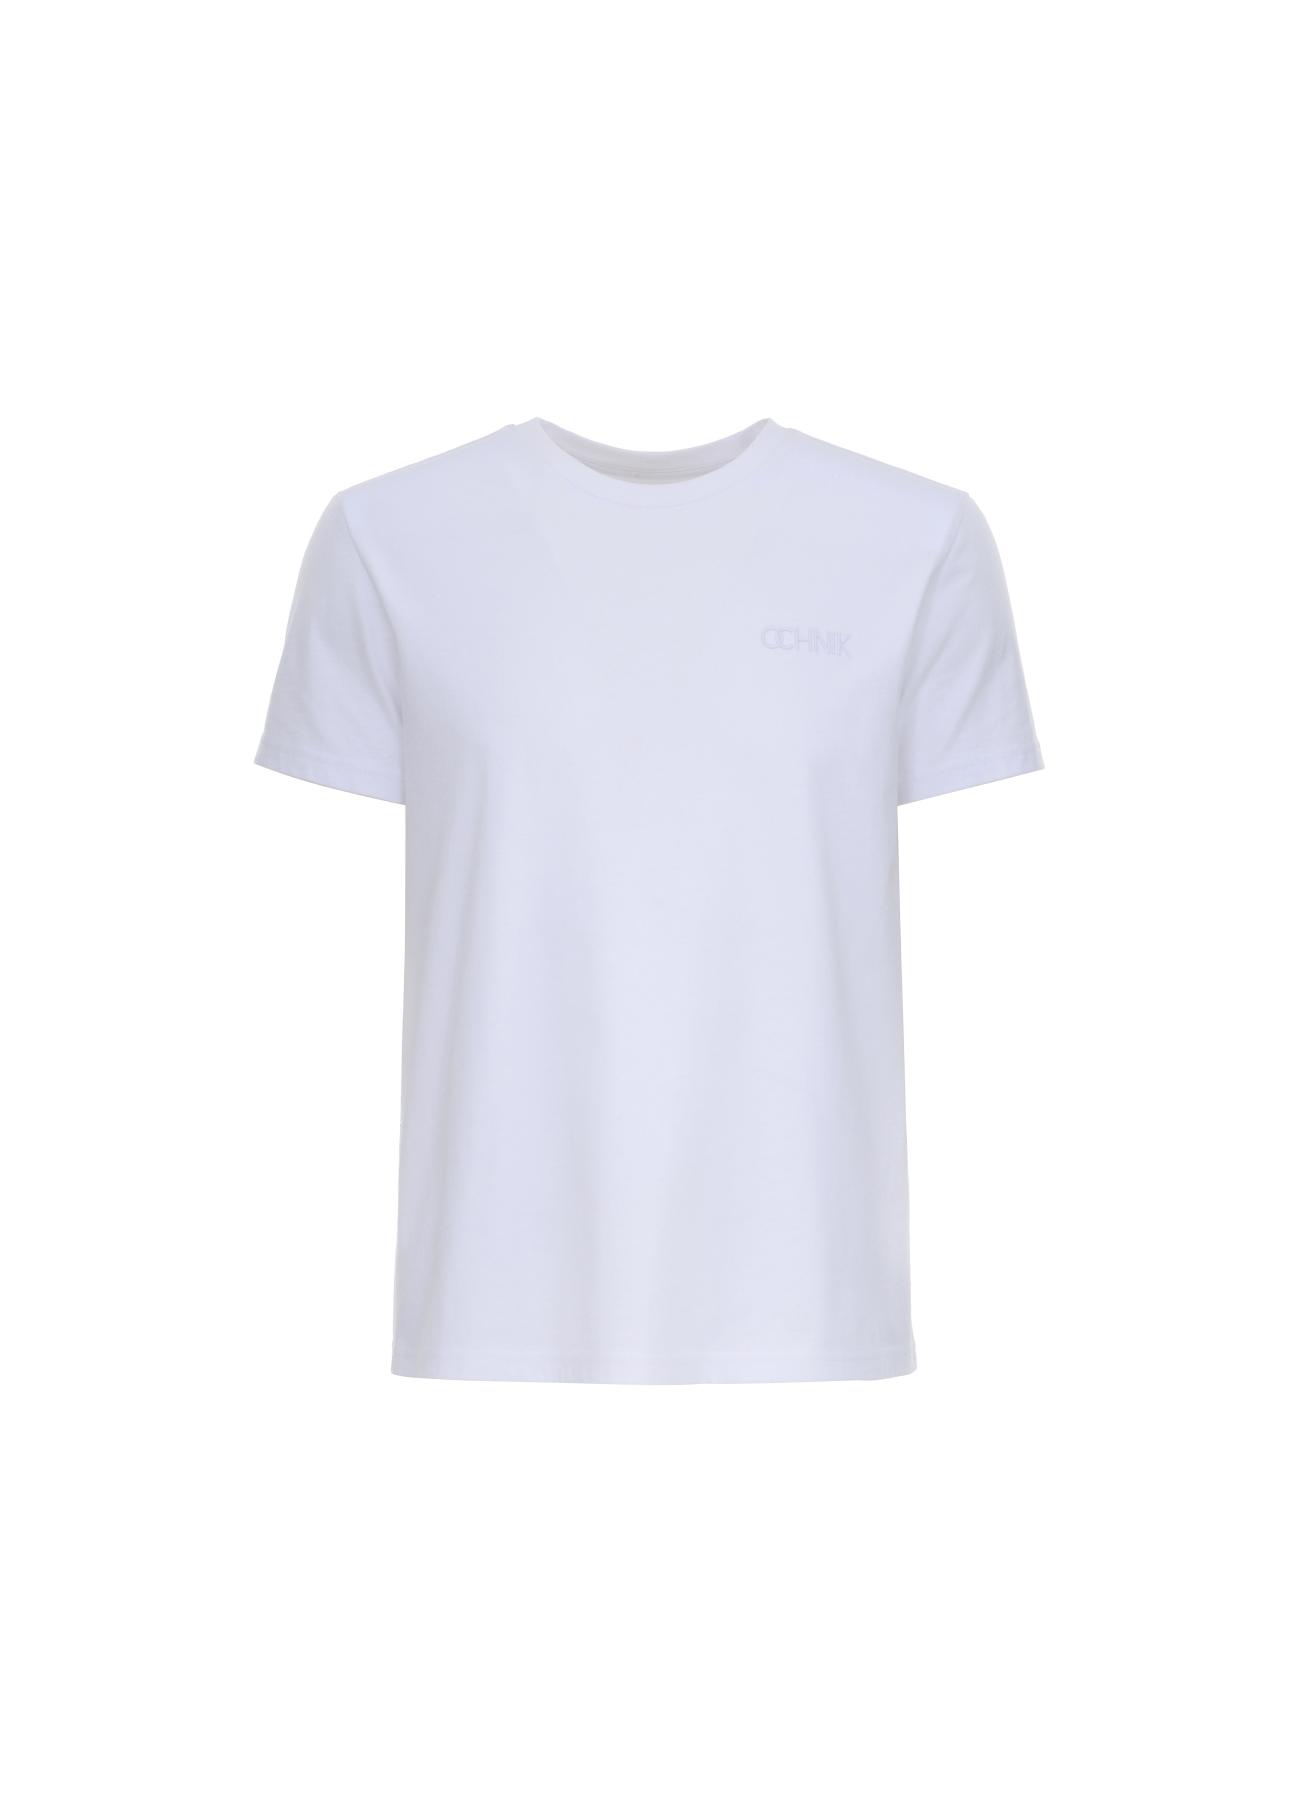 T-shirt męski TSHMT-0075-11(W22)